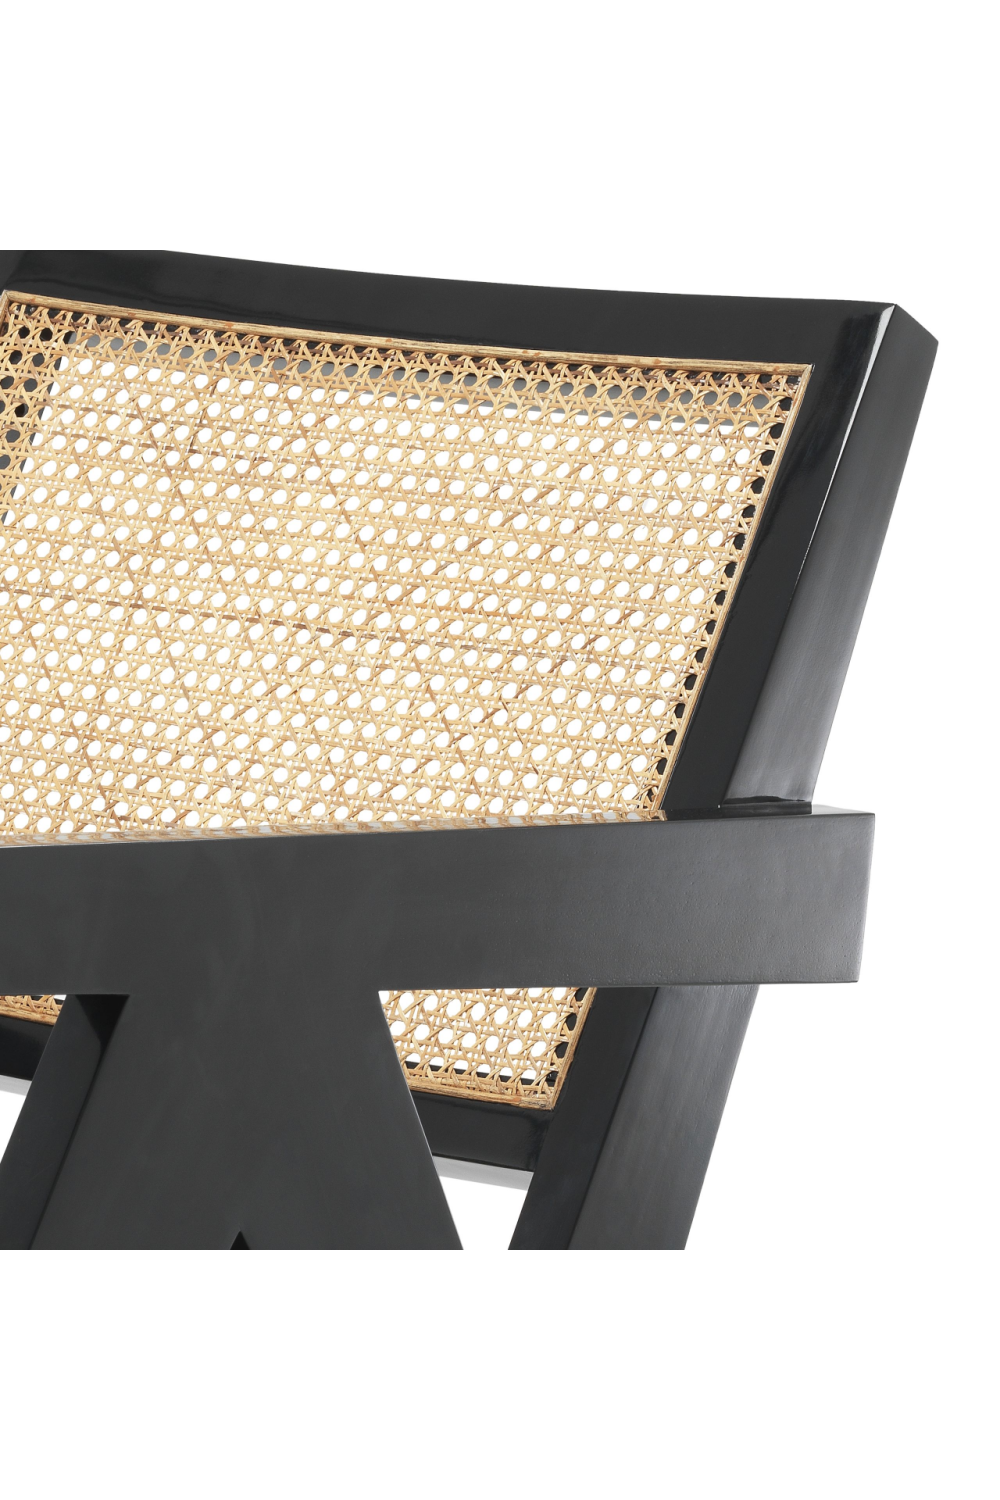 Natural Cane Accent Chair | Eichholtz Adagio | Oroa.com